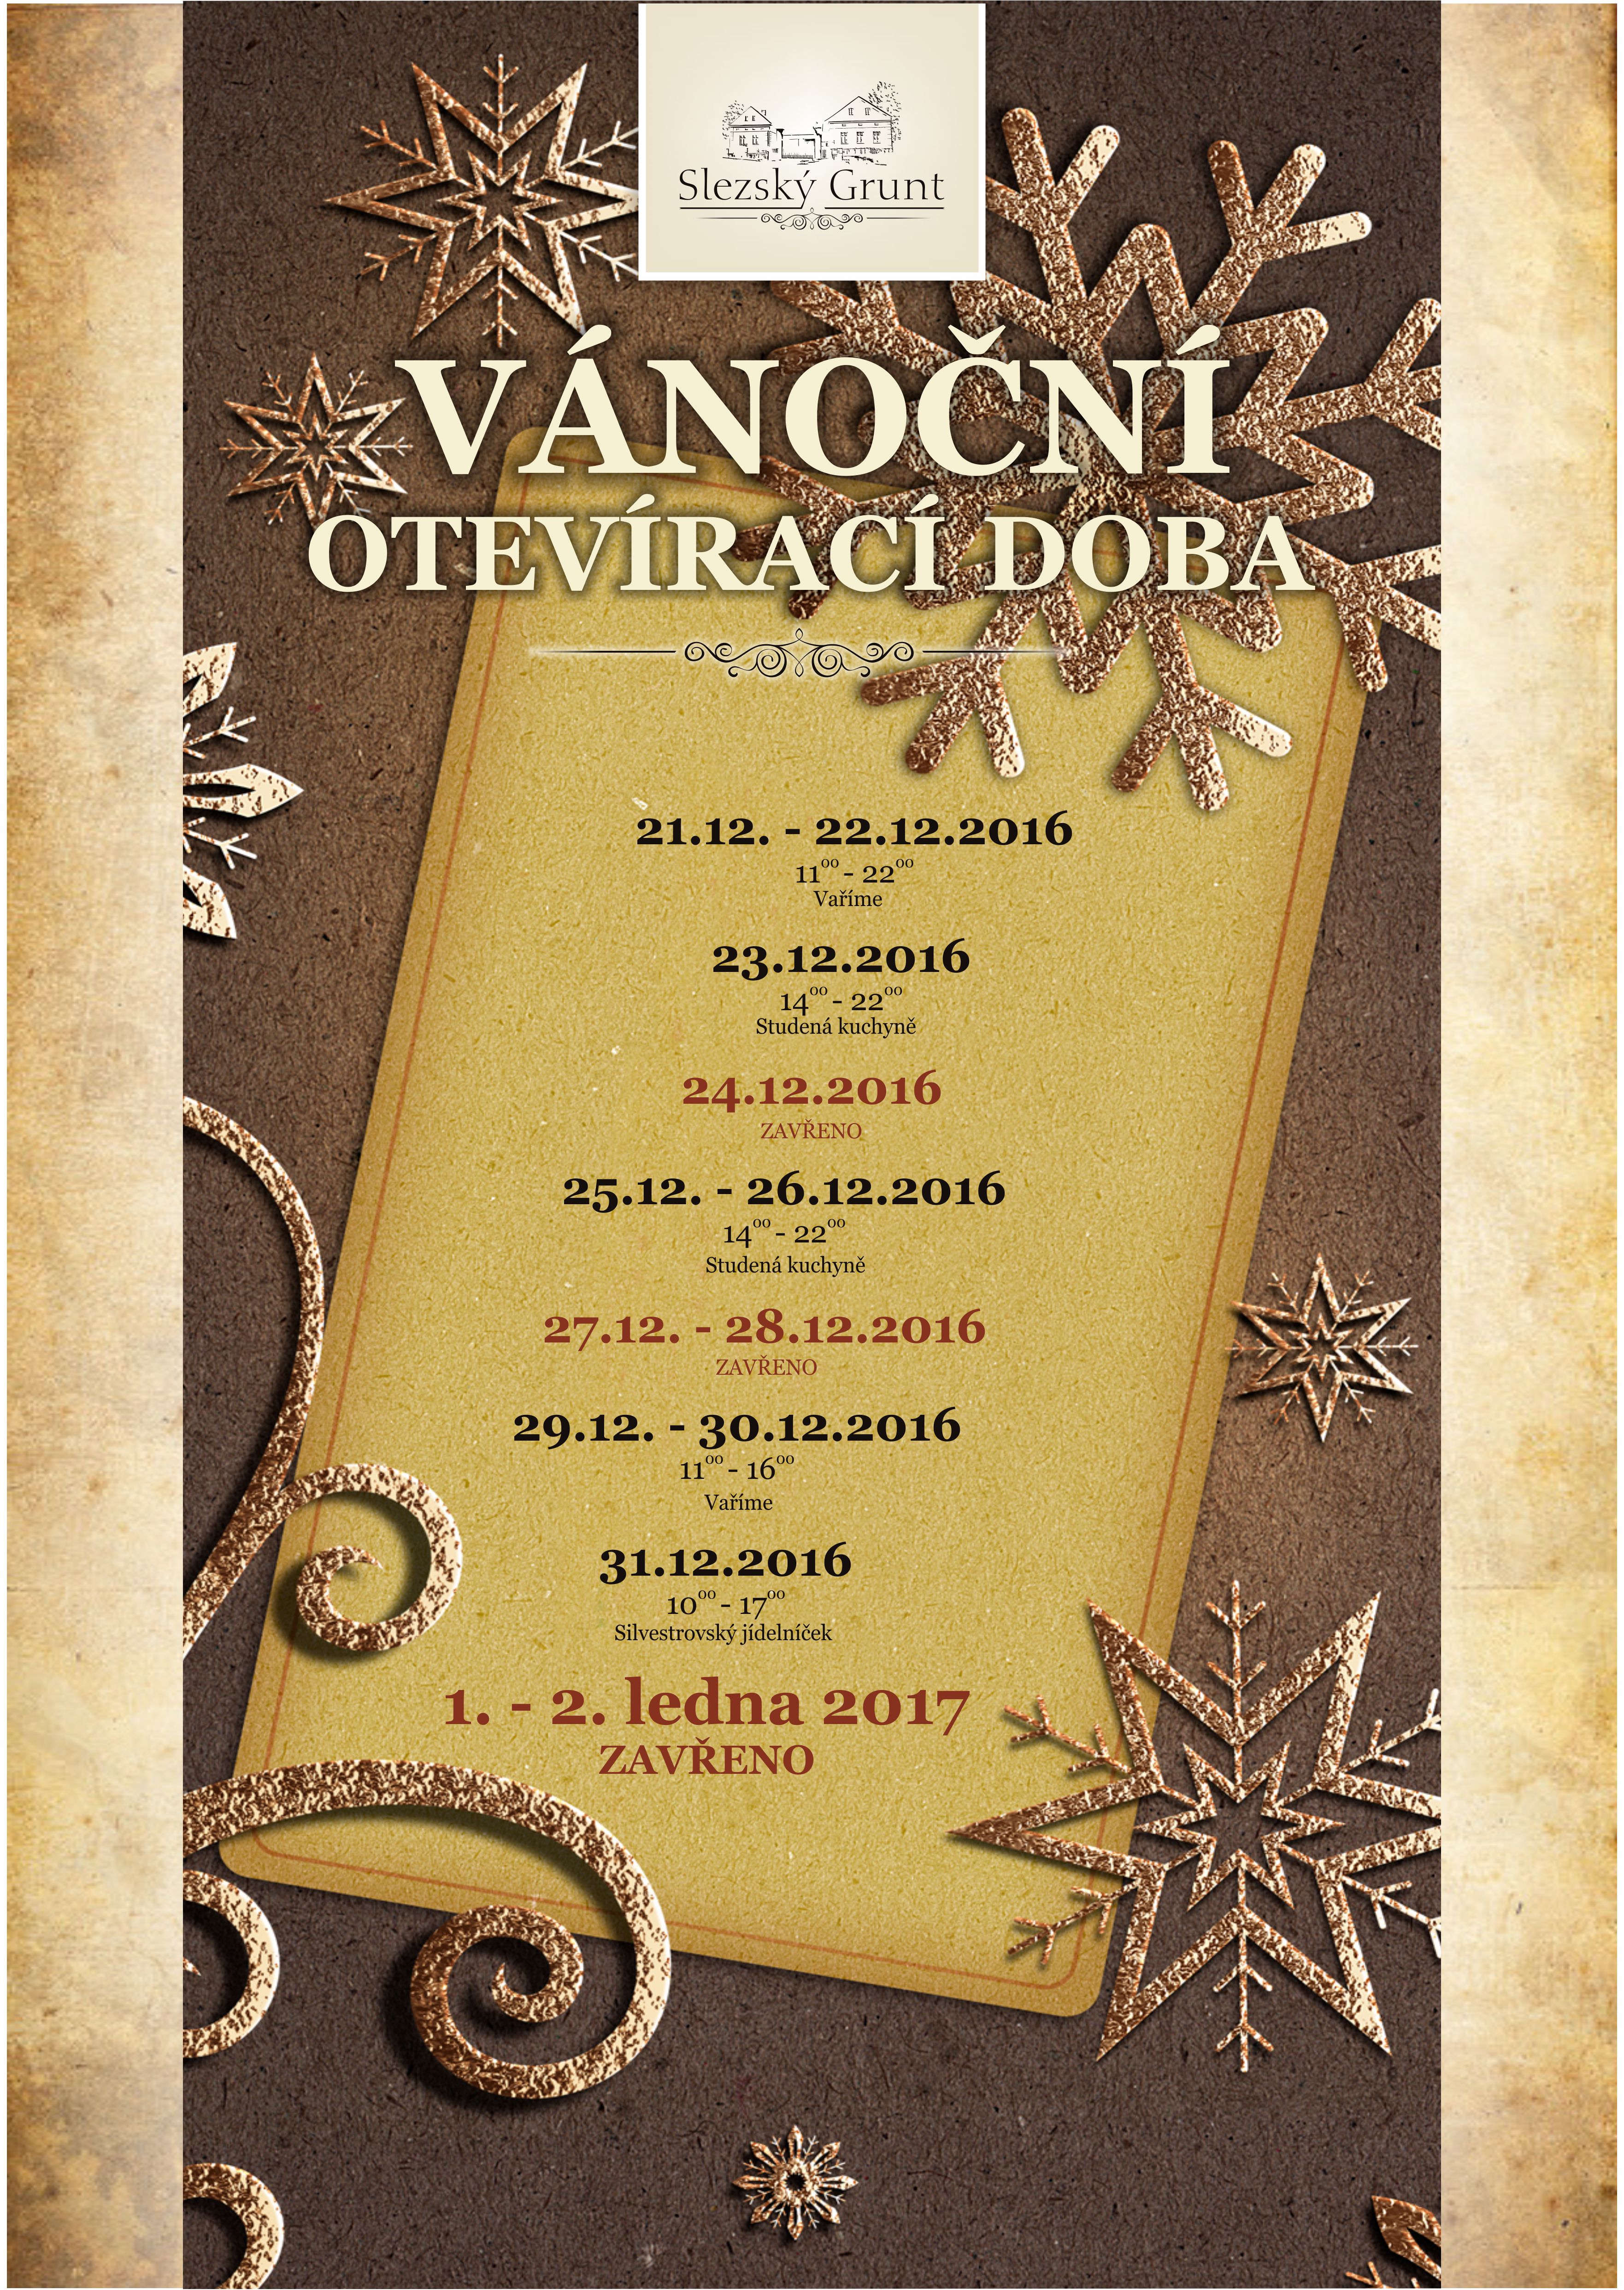 VanocniOteviraciDoba2016